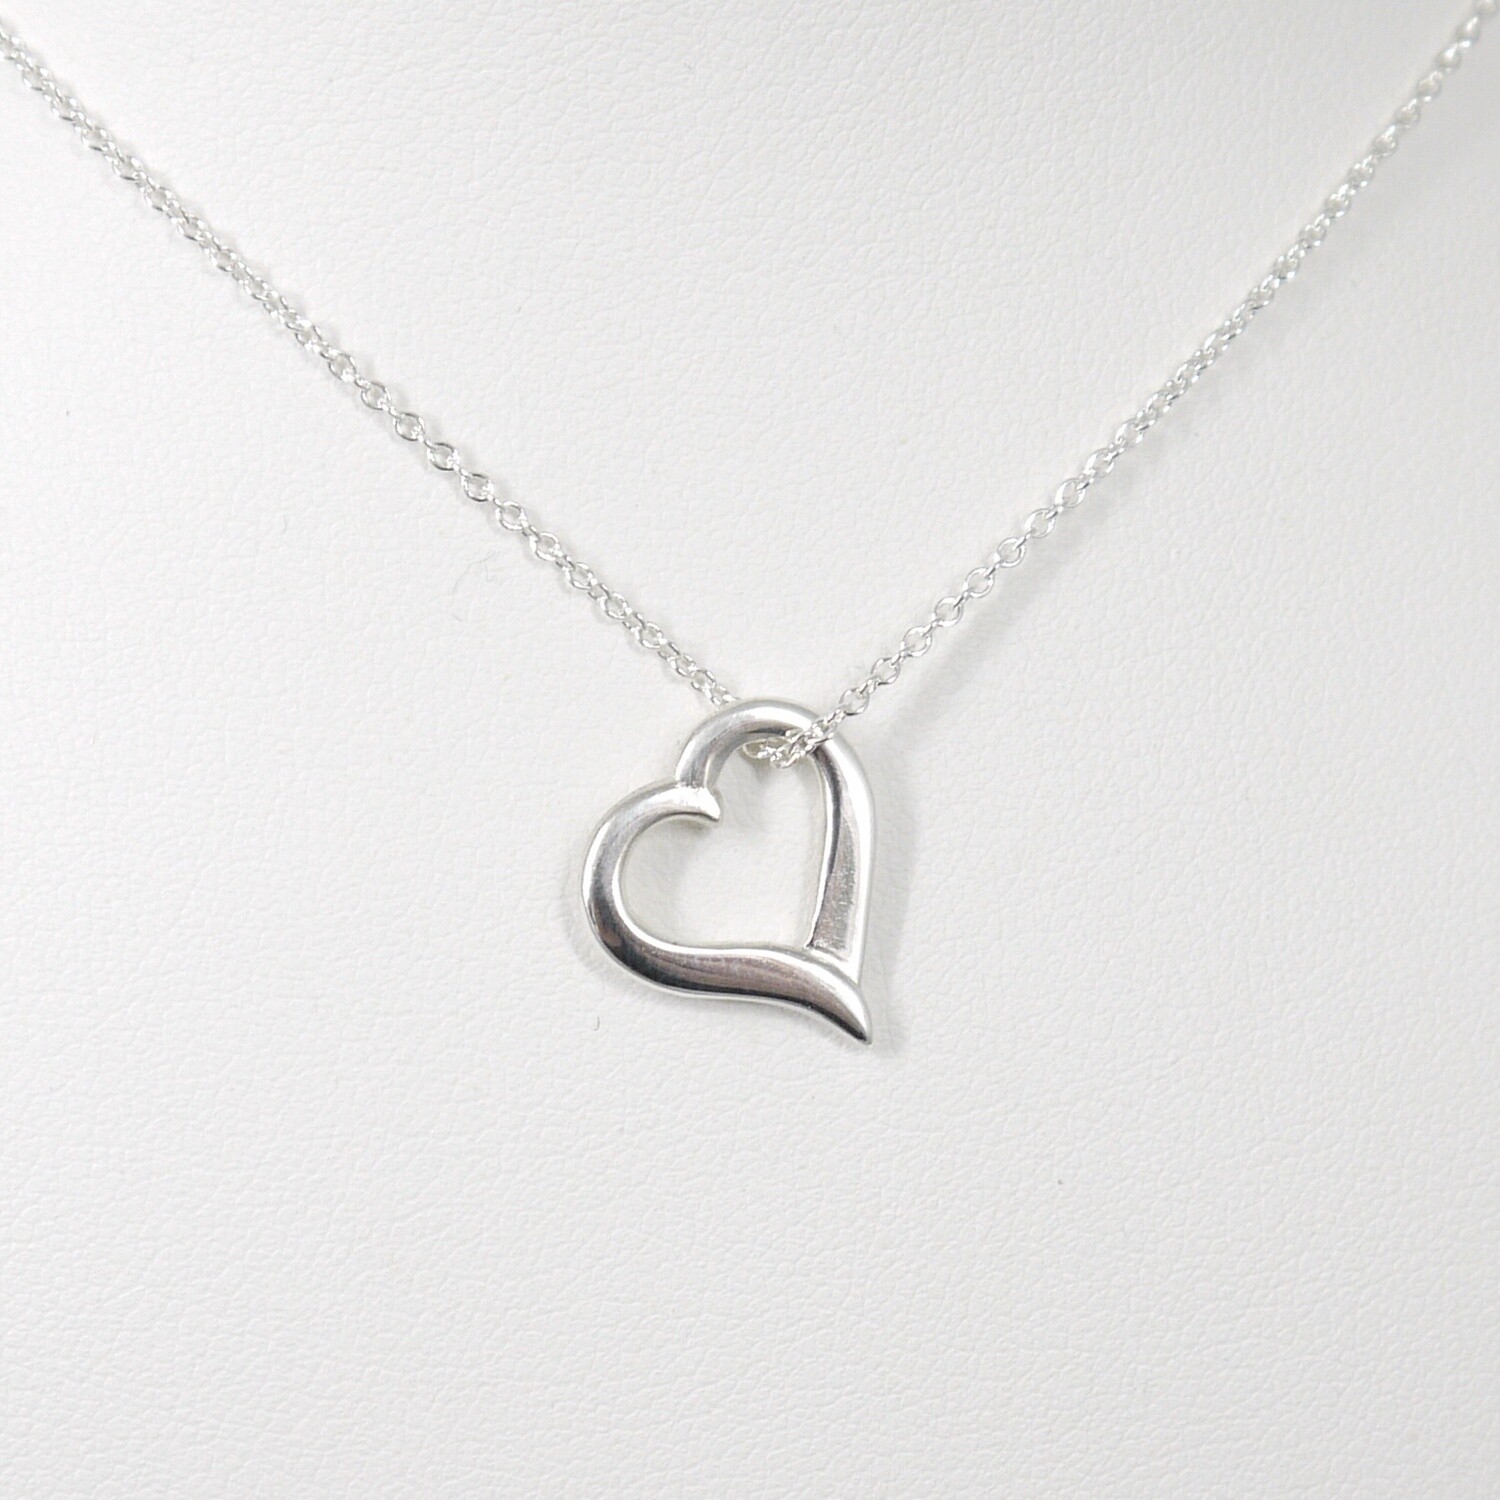 Heart in silver pendant